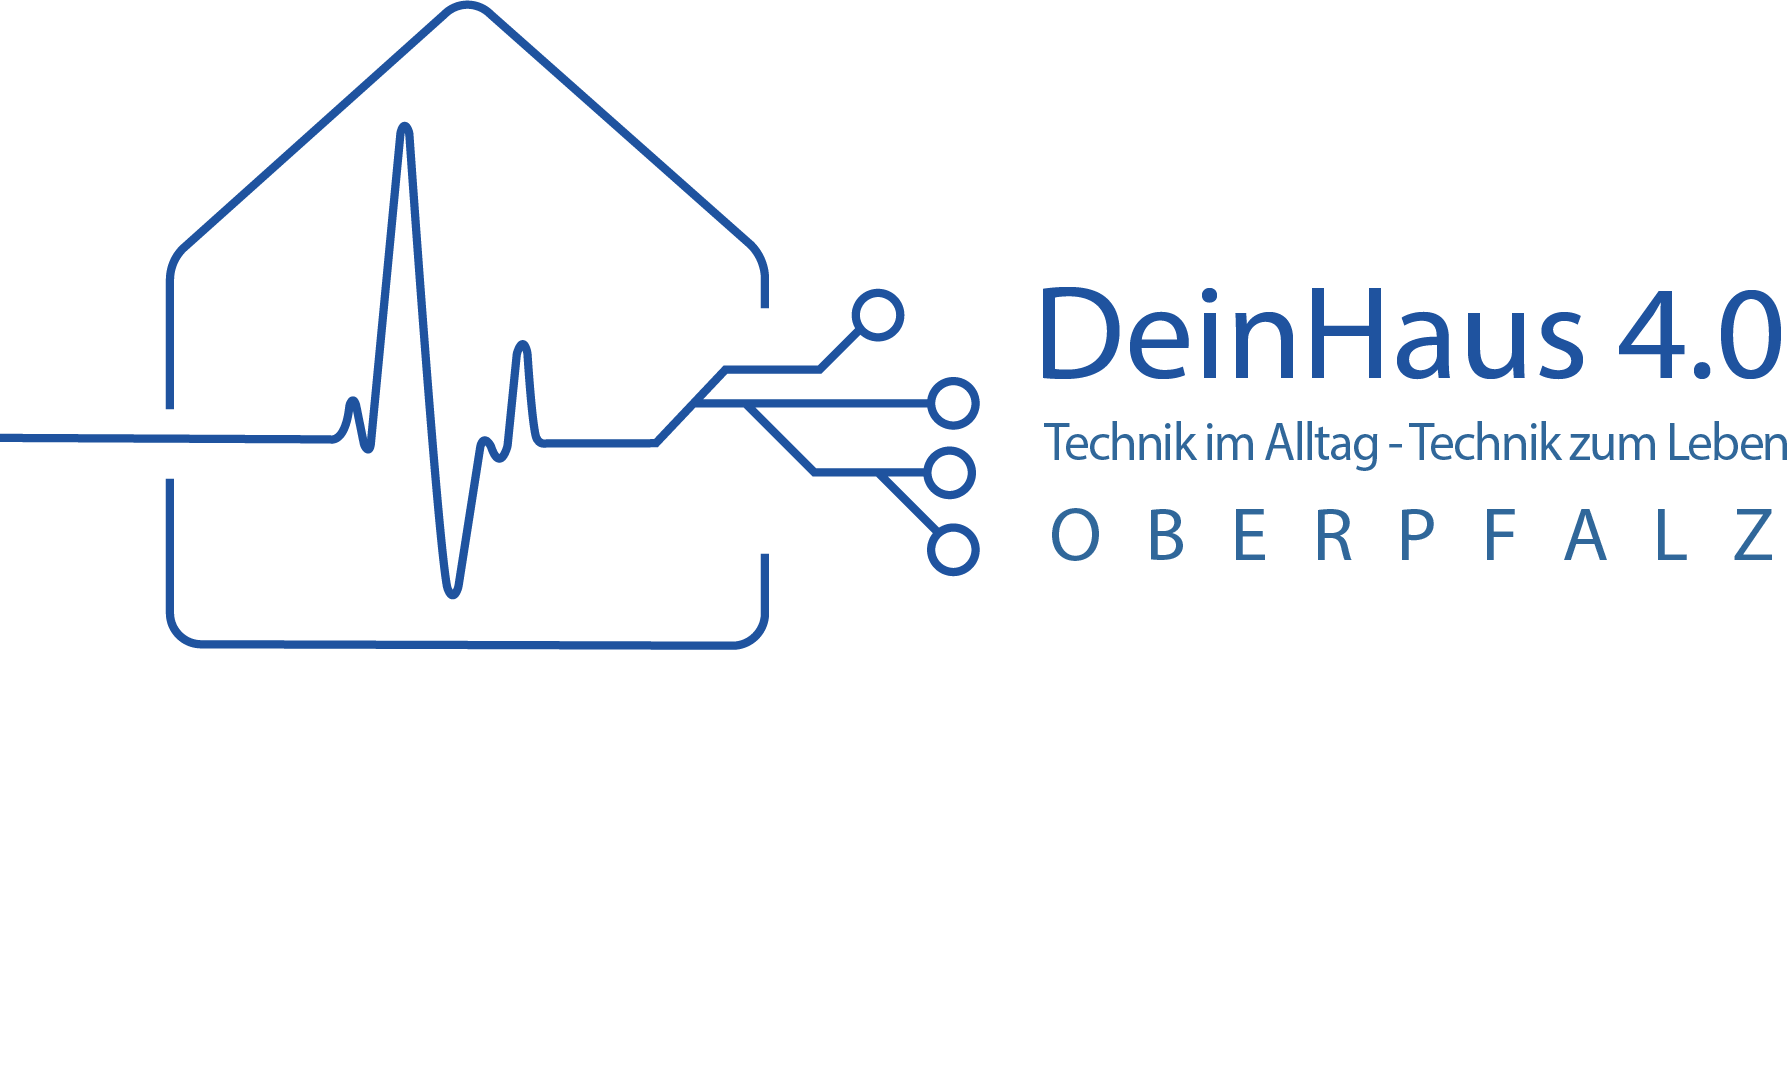 Wortbildmarke des Projektes DeinHaus 4.0 Oberpfalz